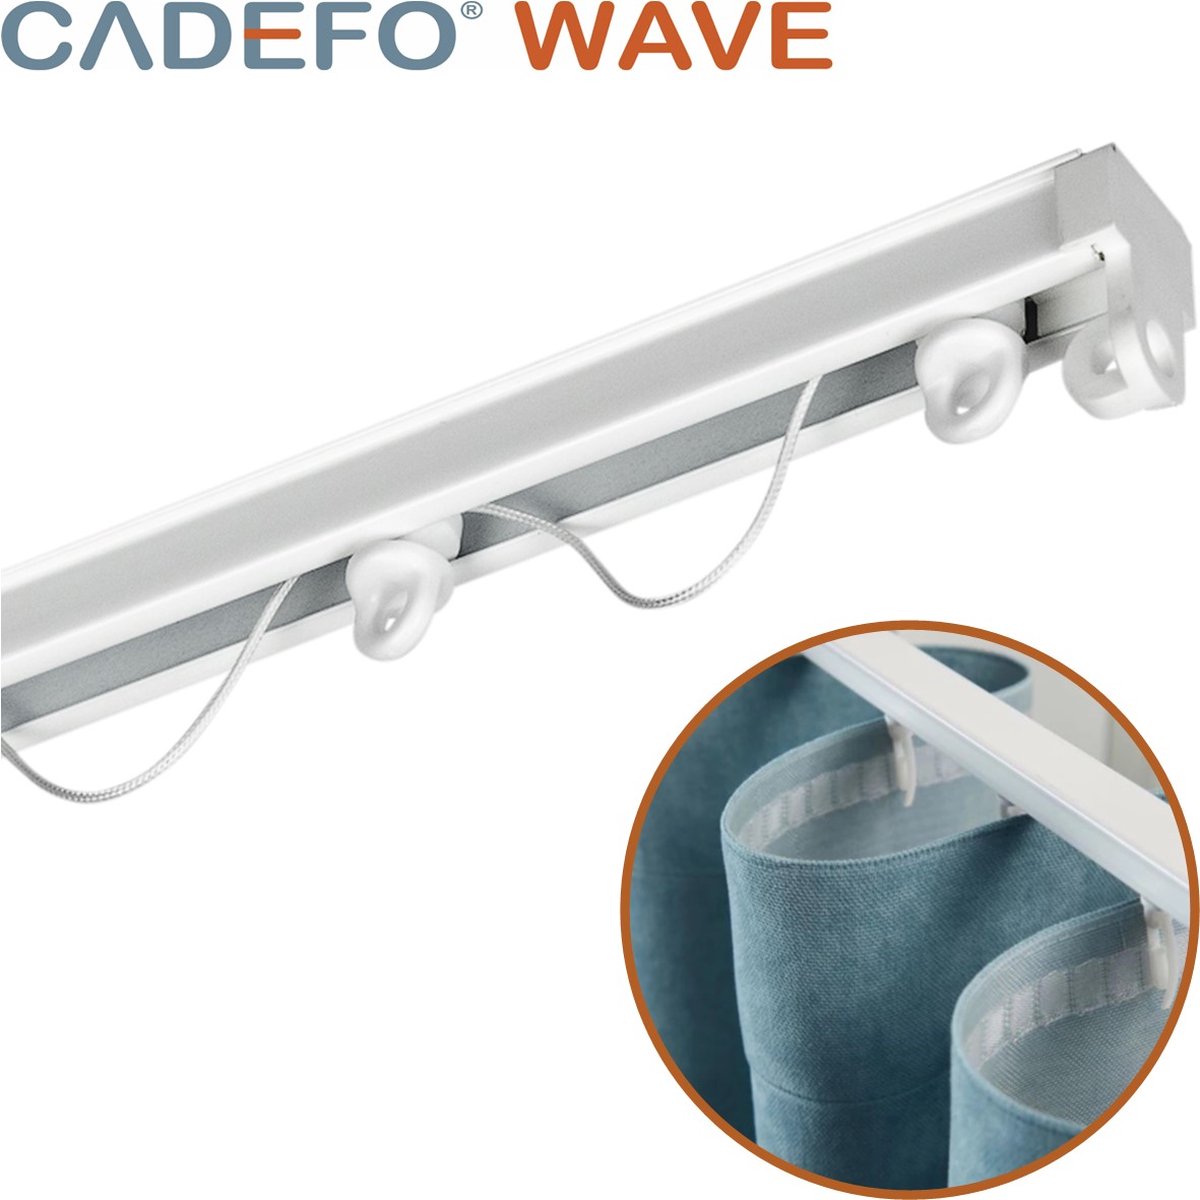 CADEFO WAVE (301 - 350 cm) Gordijnrails - Compleet op maat! - UIT 1 STUK - Leverbaar tot 6 meter - Plafondbevestiging - Lengte 345 cm